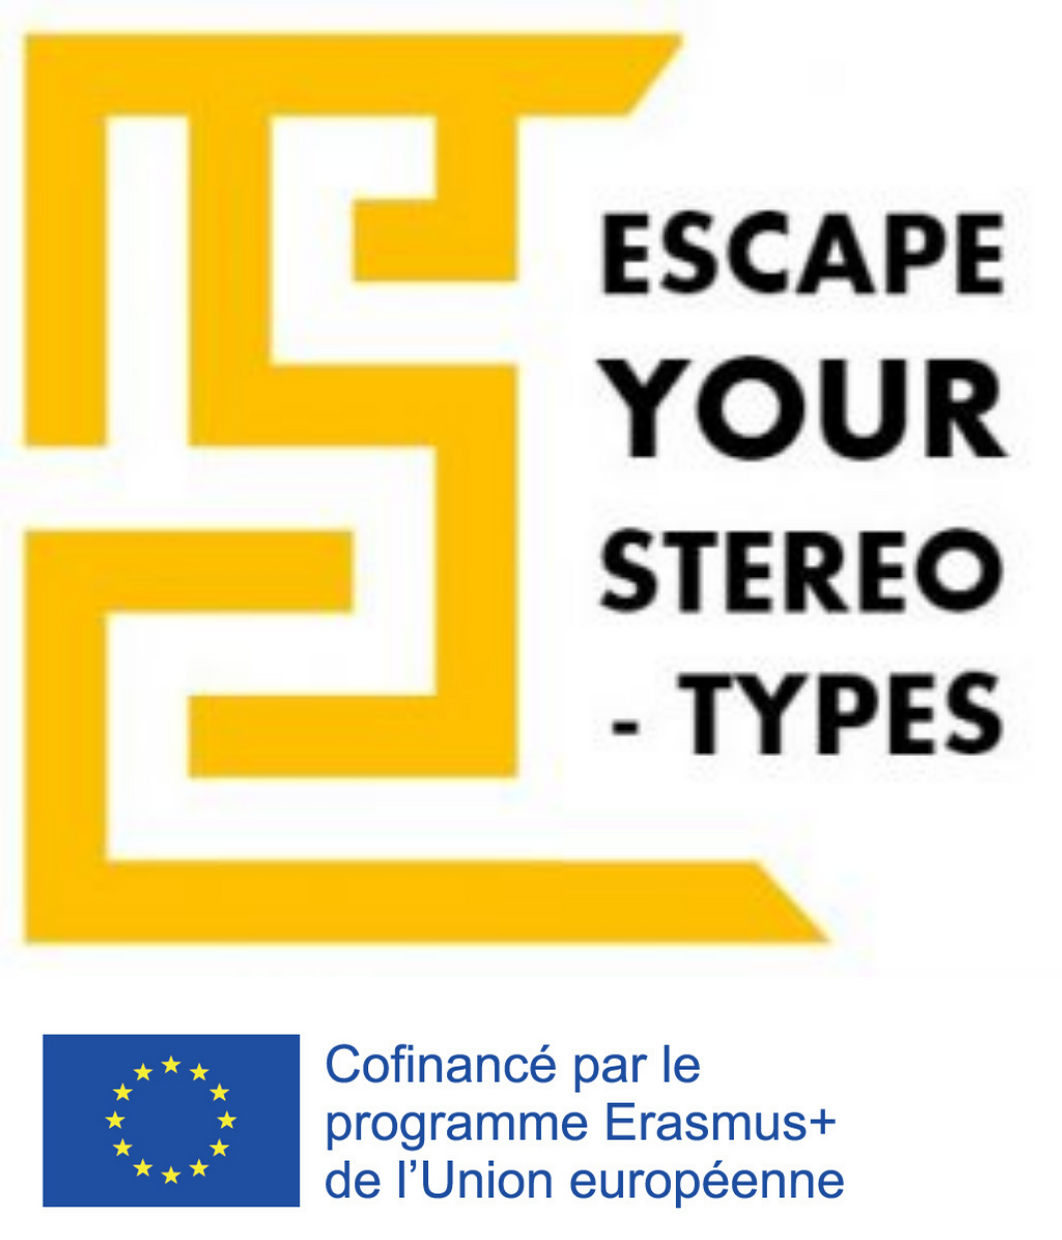 (Français) Logo Escape Your Stereotypes Projet confinancé par le programme erasmus + de l'union européenne L'objectif du projet Escape your Stereotypes est de créer un Escape Game pédagogique sur l'interculturalité et la lutte contre les stéréotypes et les préjugés. Escape your Stereotypes est soutenu par le programme Erasmus+ de l'Union Européenne.